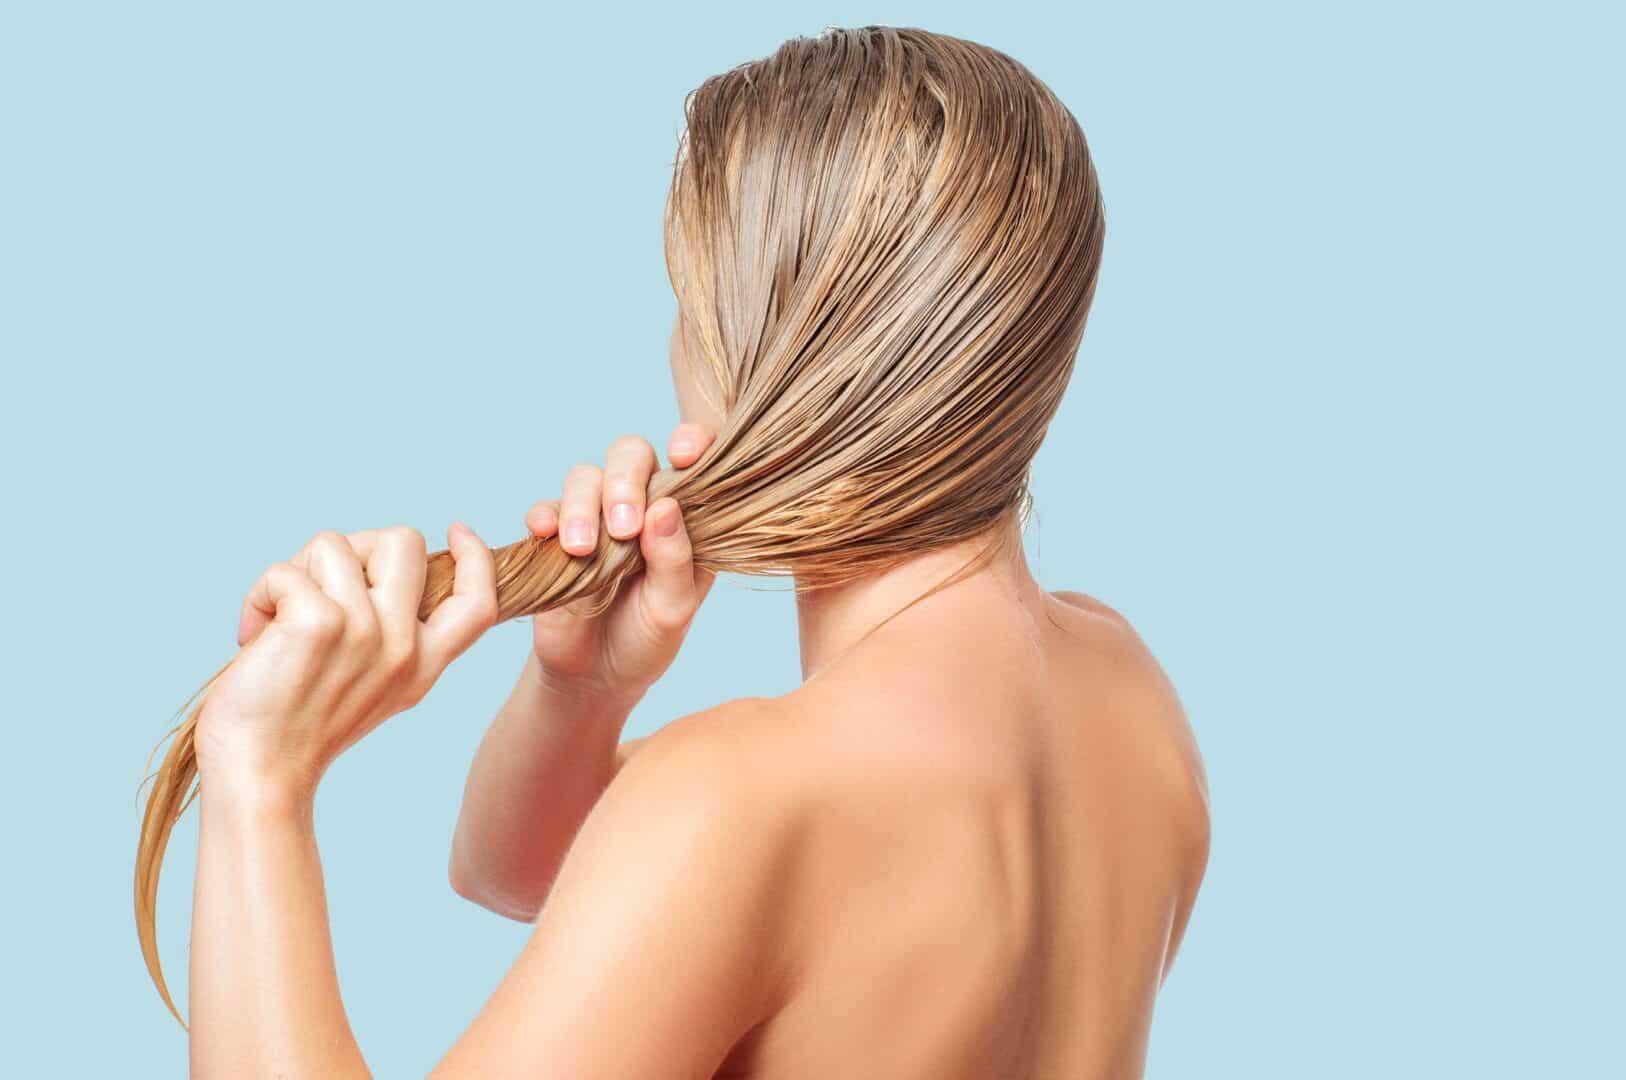 soro fisiologico no cabelo beneficios e formas de usar 8 - La solución salina en el cabello - Beneficios y formas de uso